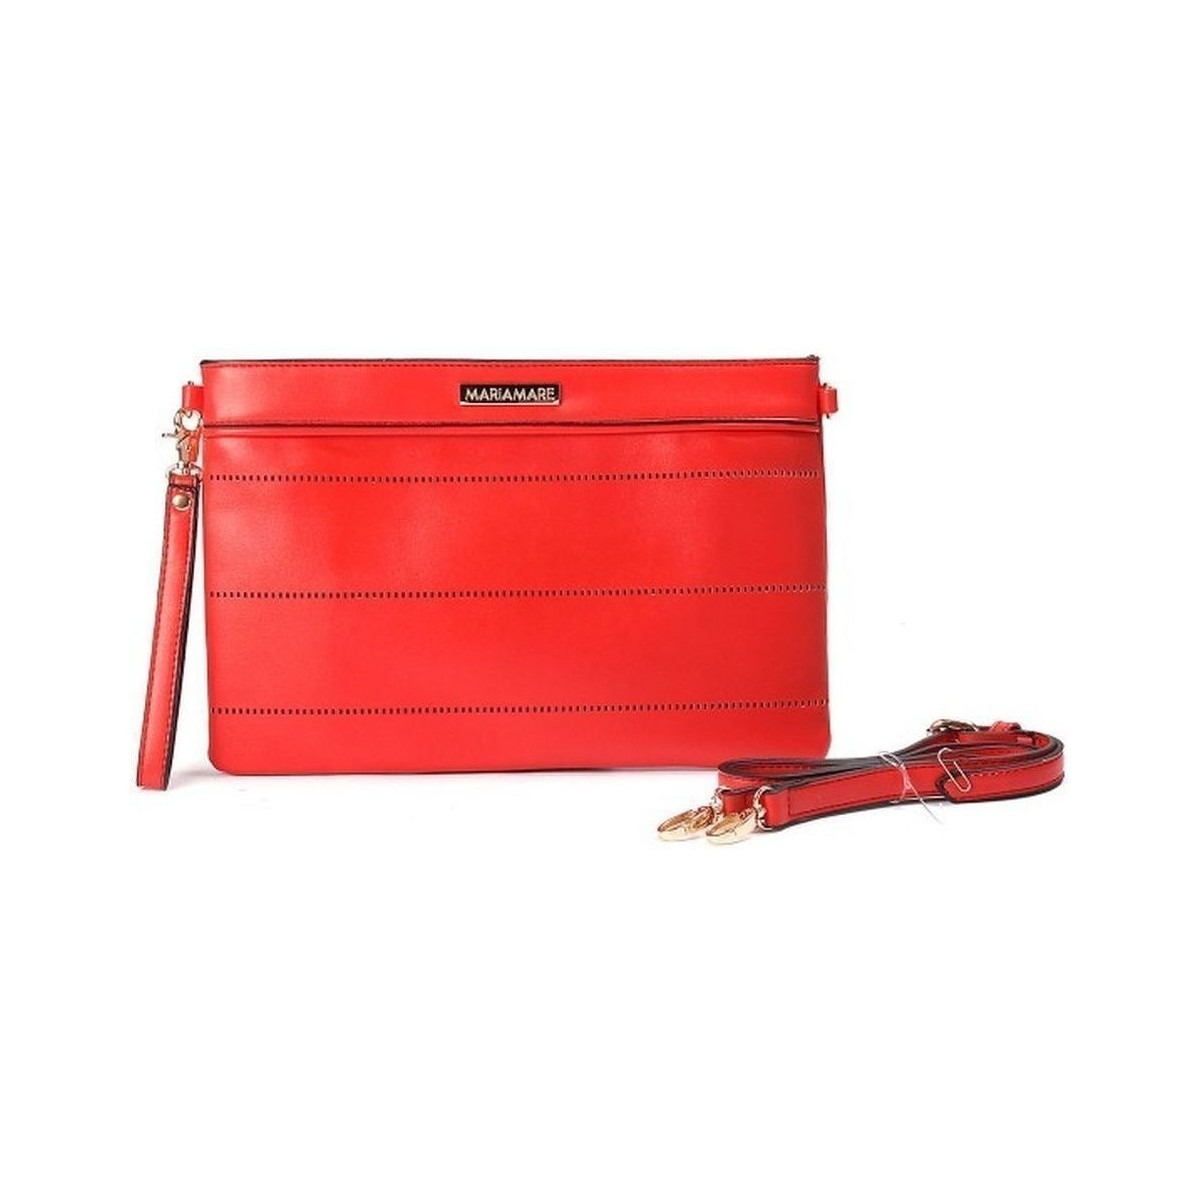 Woman Handbag in Red - Maria Mare - Spartoo GOOFASH